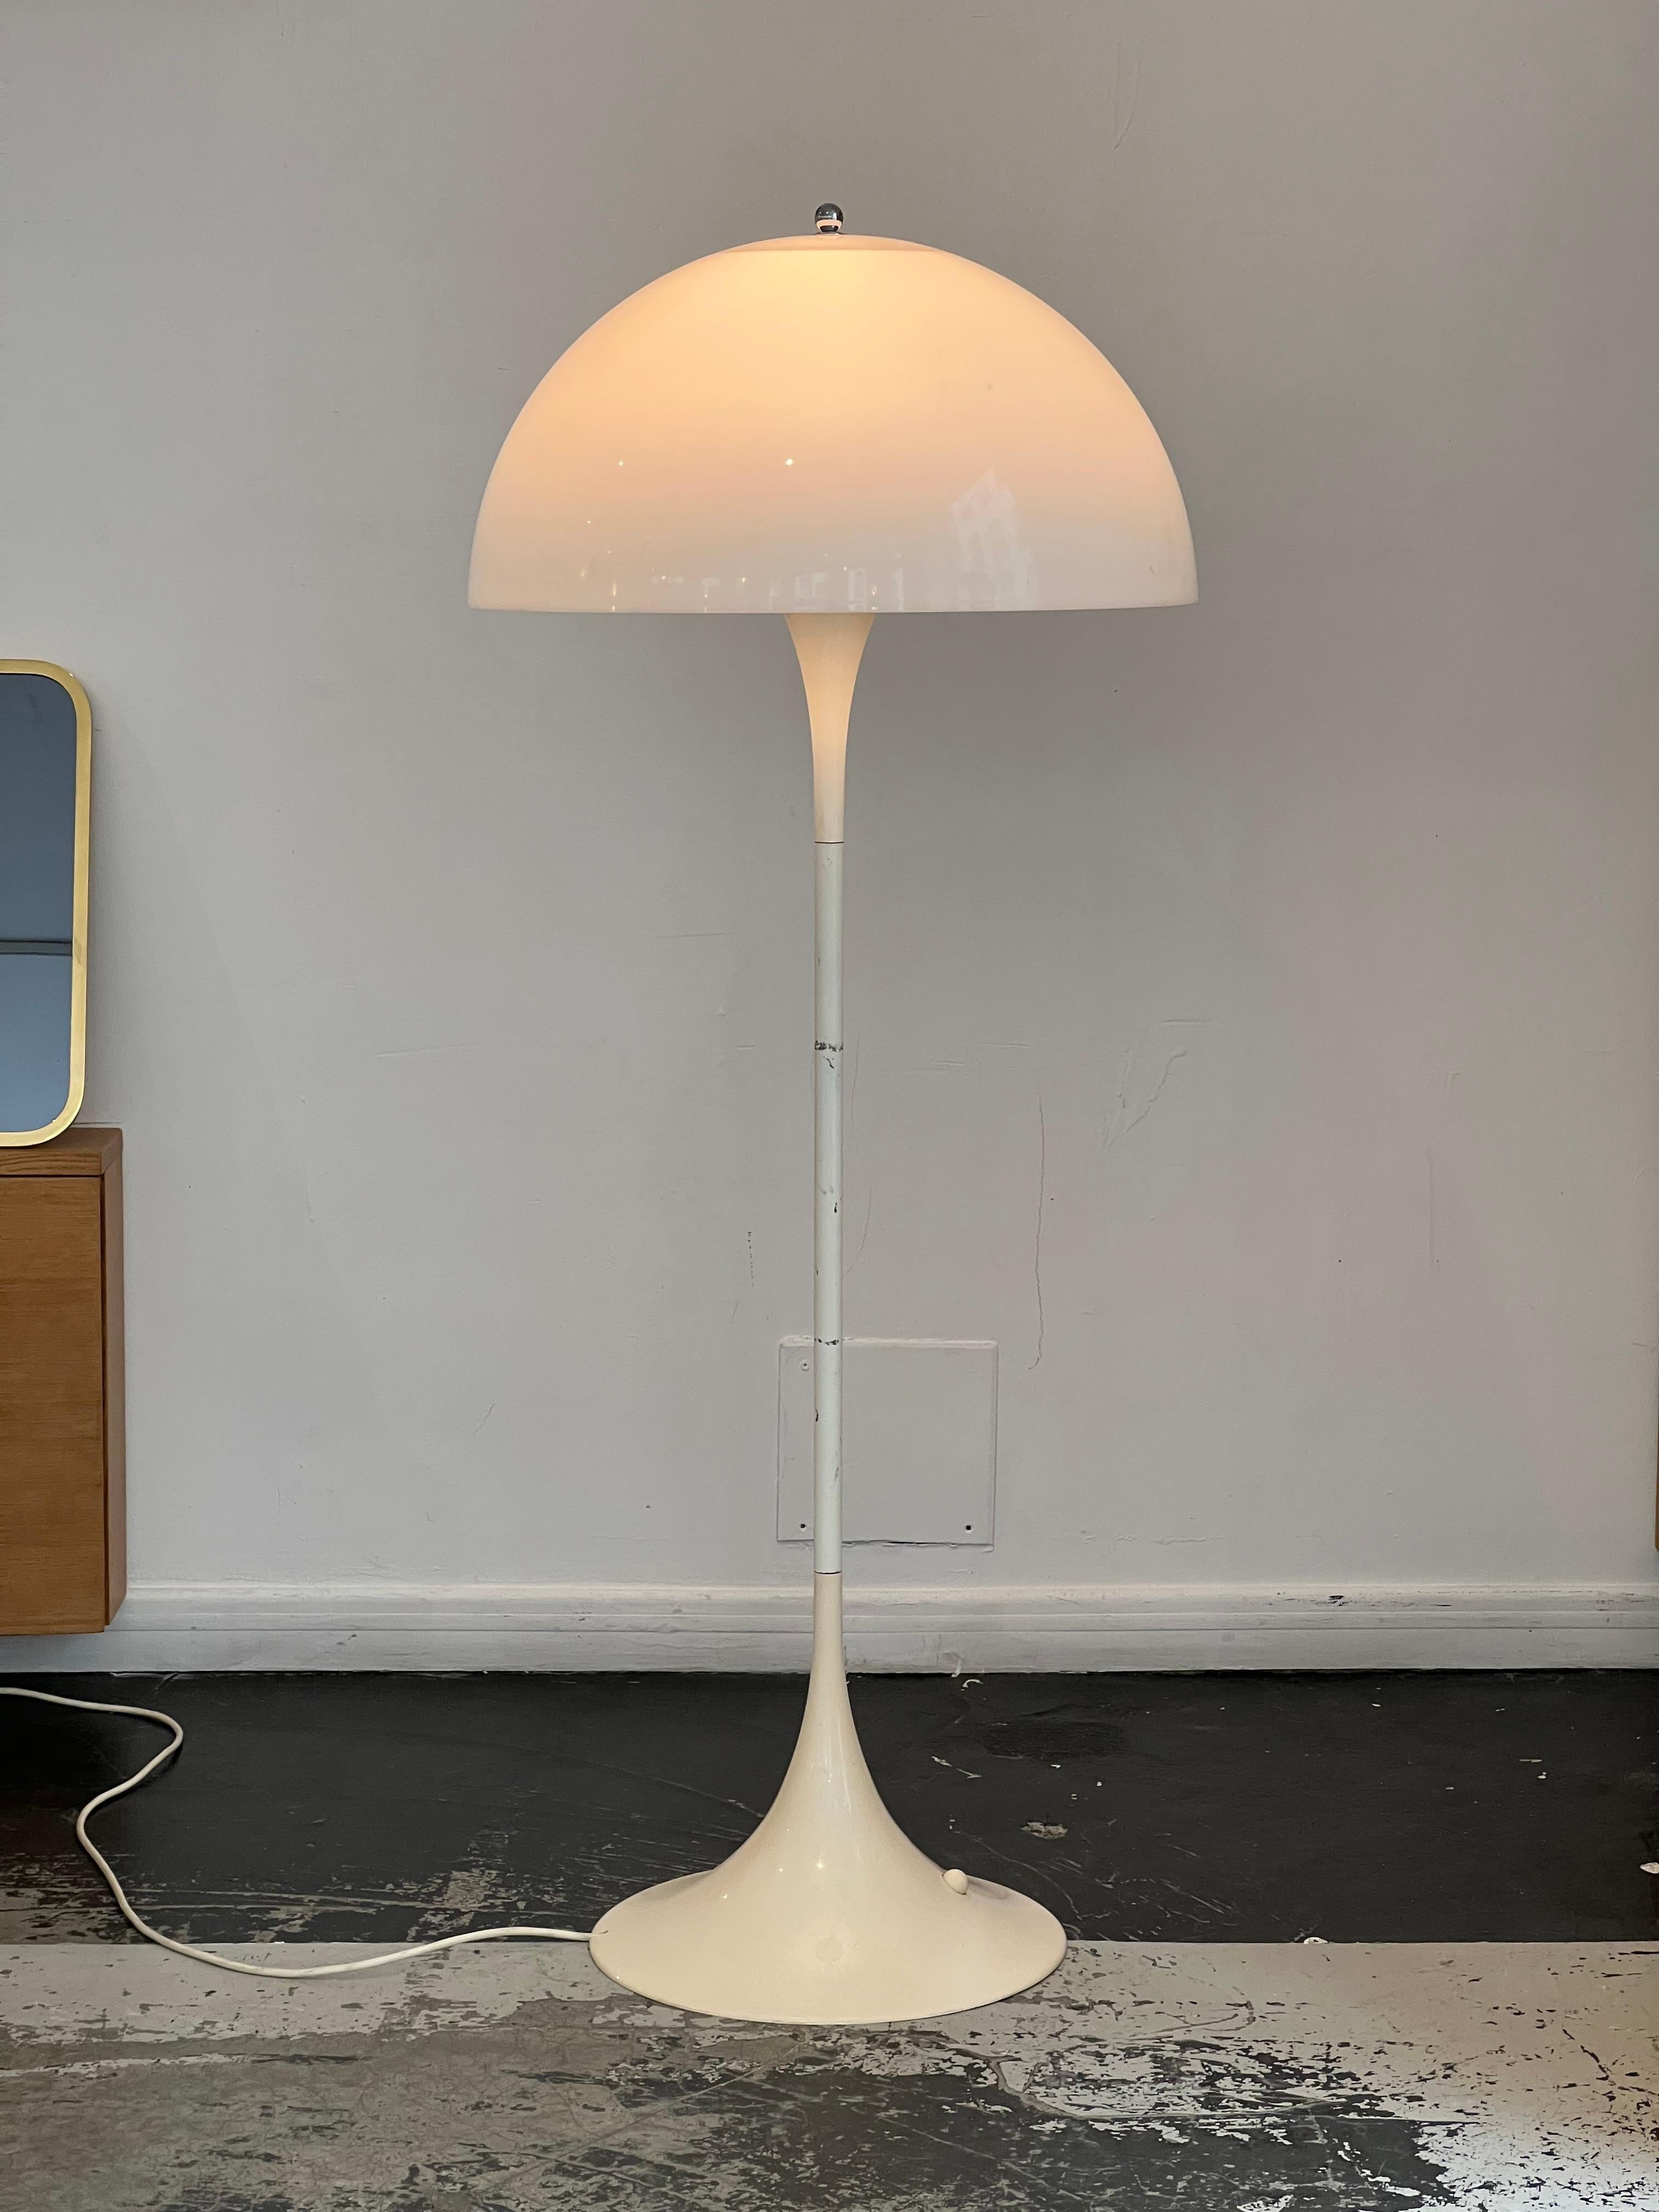 Ce lampadaire a été conçu par le designer danois Verner Panton pour Louis Poulsen en 1971. Ce modèle se distingue par sa simplicité, dont la forme organique
émet une lumière diffuse. La base est en plastique moulé avec une tige en métal laqué blanc.